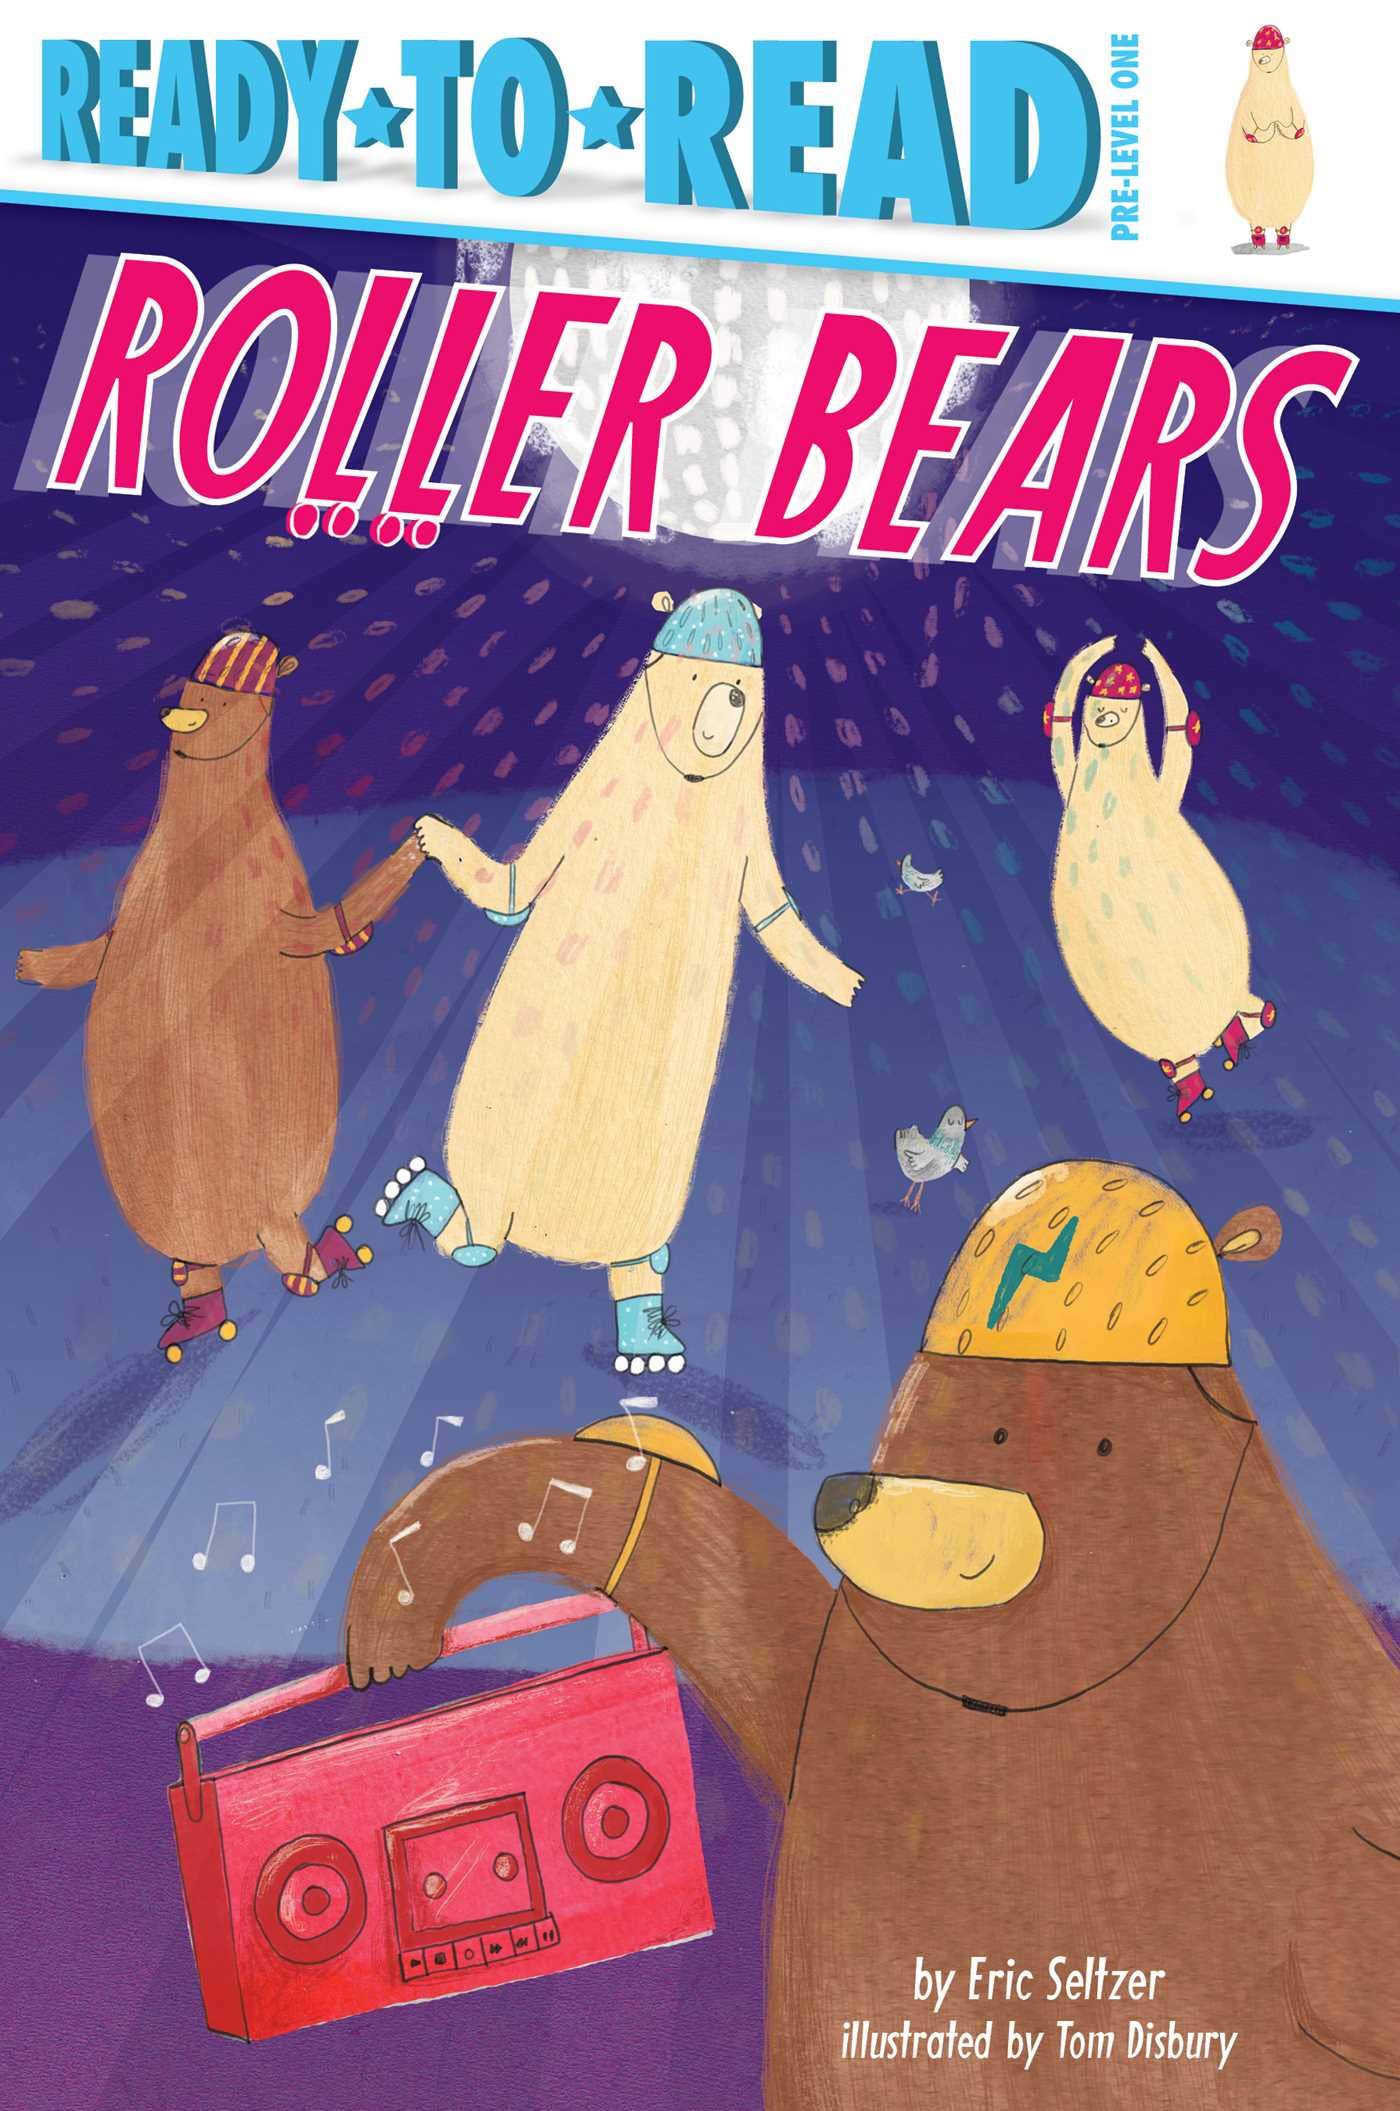 Roller Bears